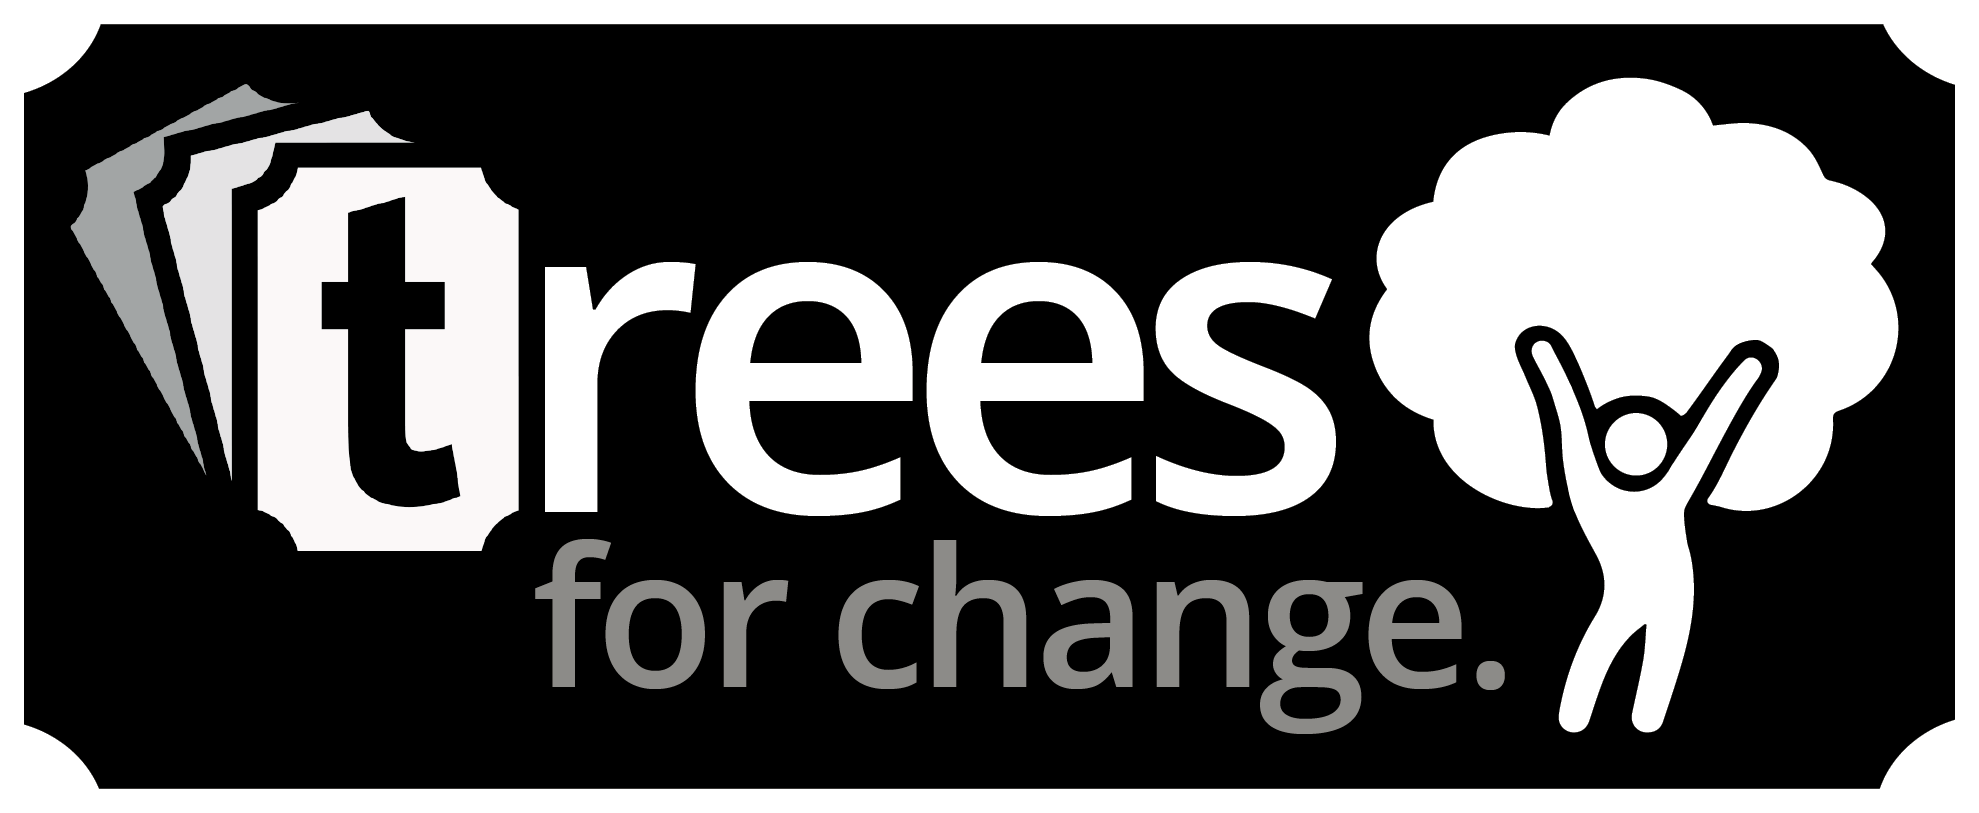 Ticketebo Trees logo